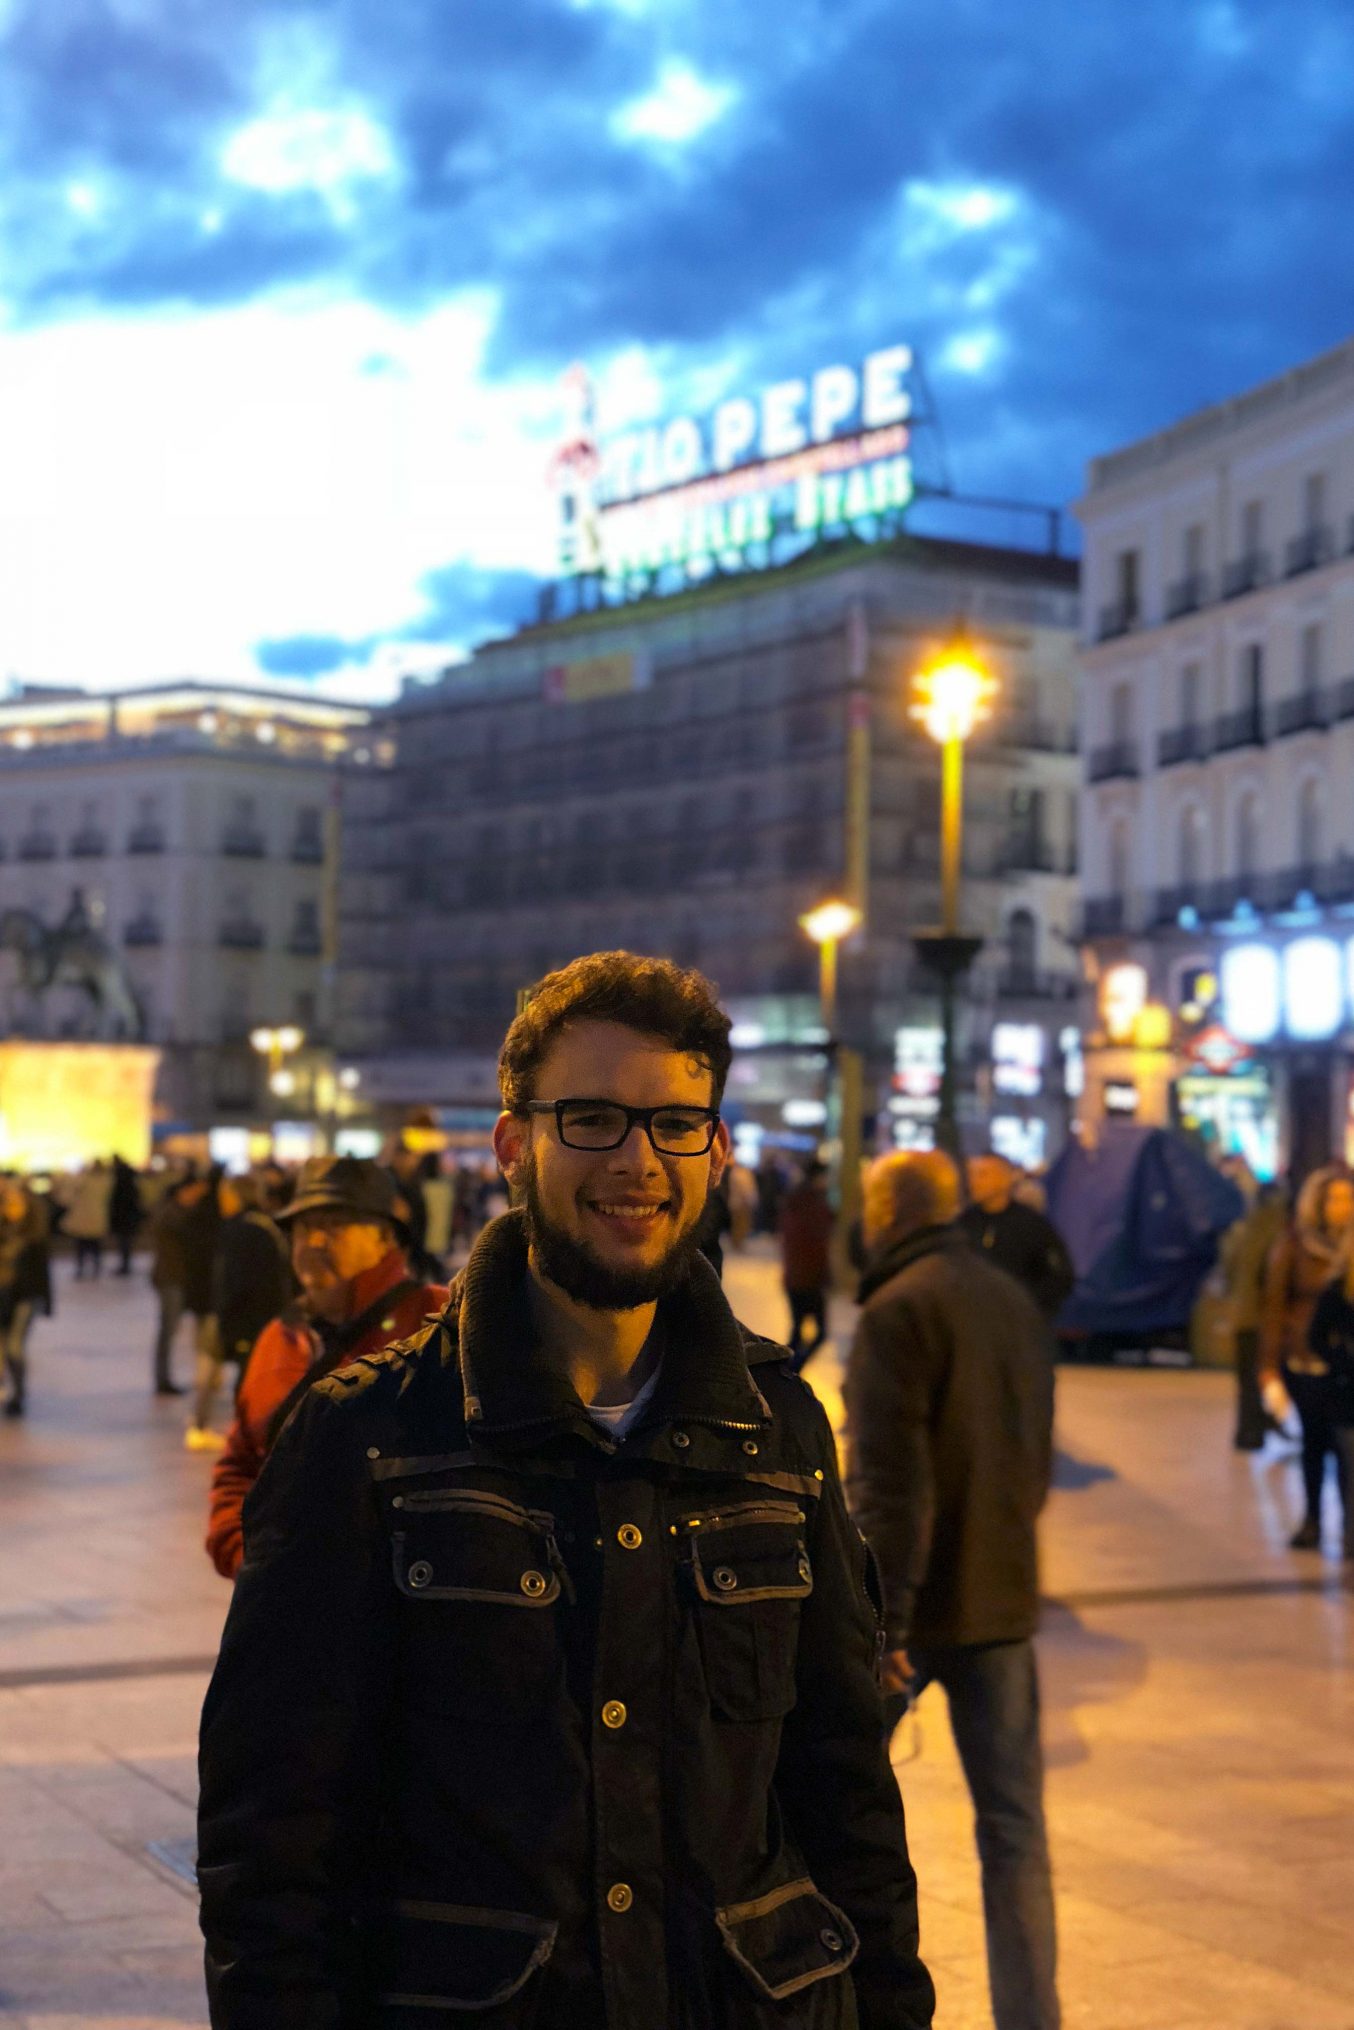 Zu sehen sind der Student und im Hintergrund der Hauptplatz "Puerta del Sol".